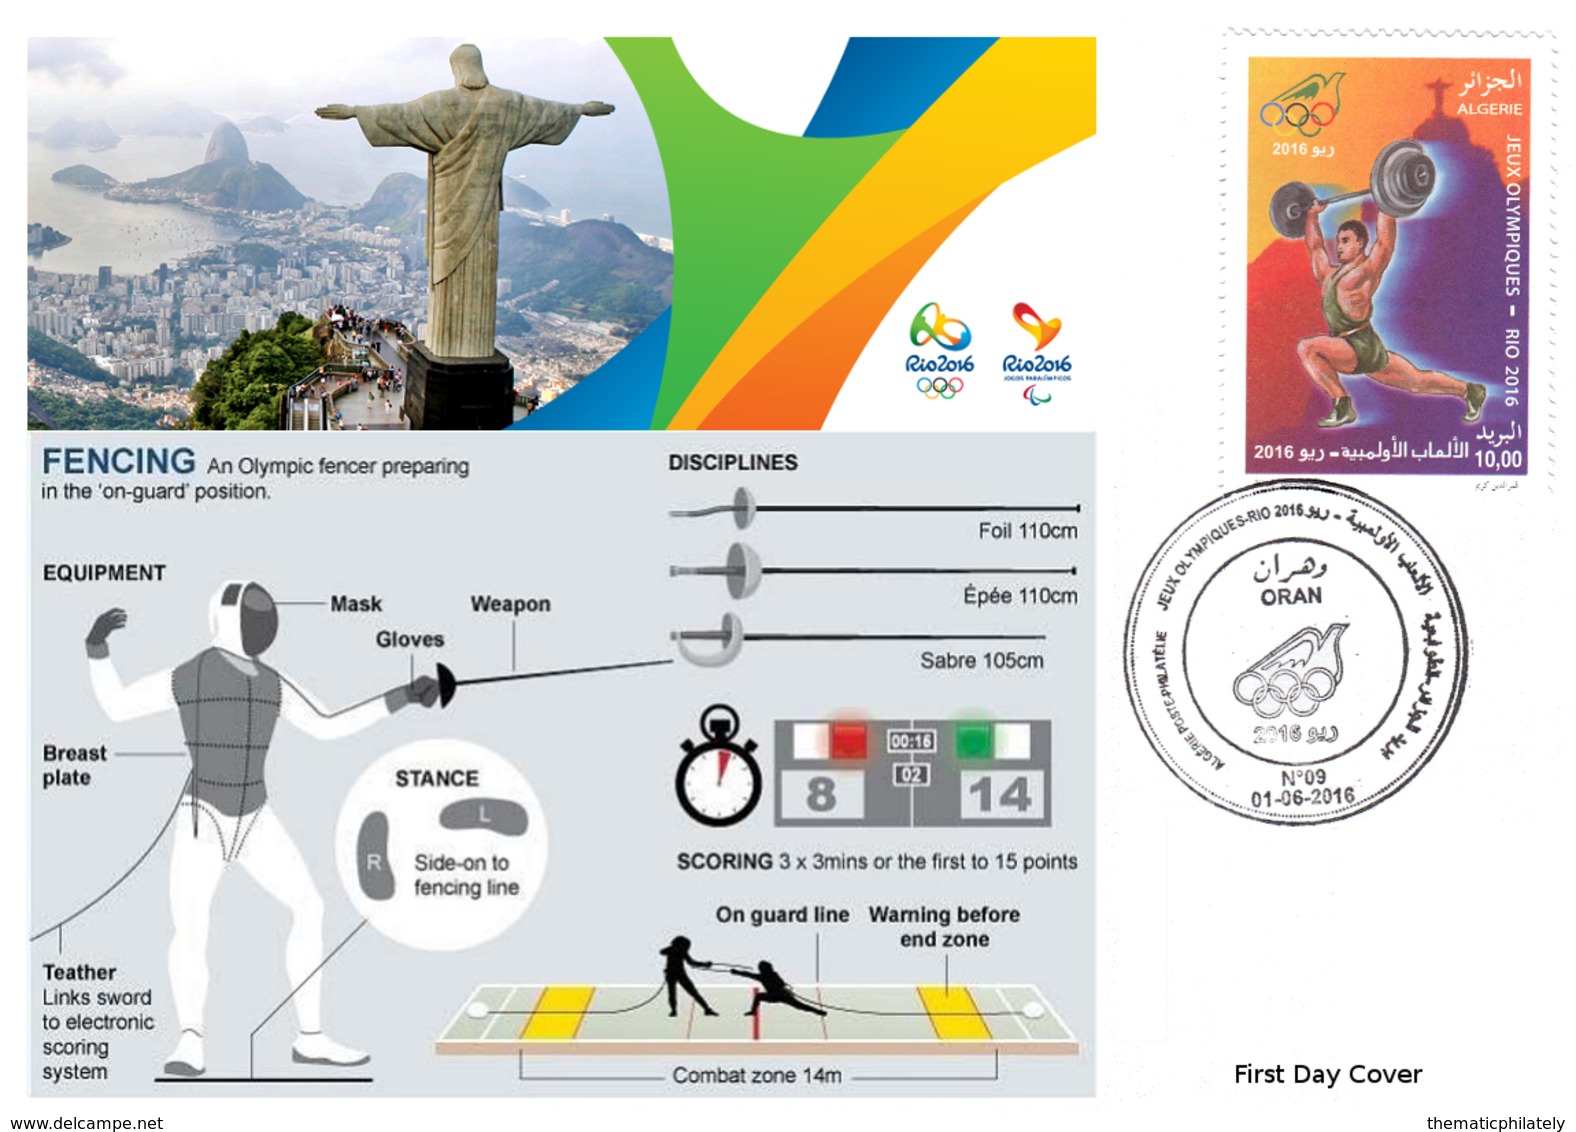 DZ Algeria 1747 Olympics Games Rio Brazil 2016 Jeux Olympiques Brésil Fencing Fechten Escrime - Fencing